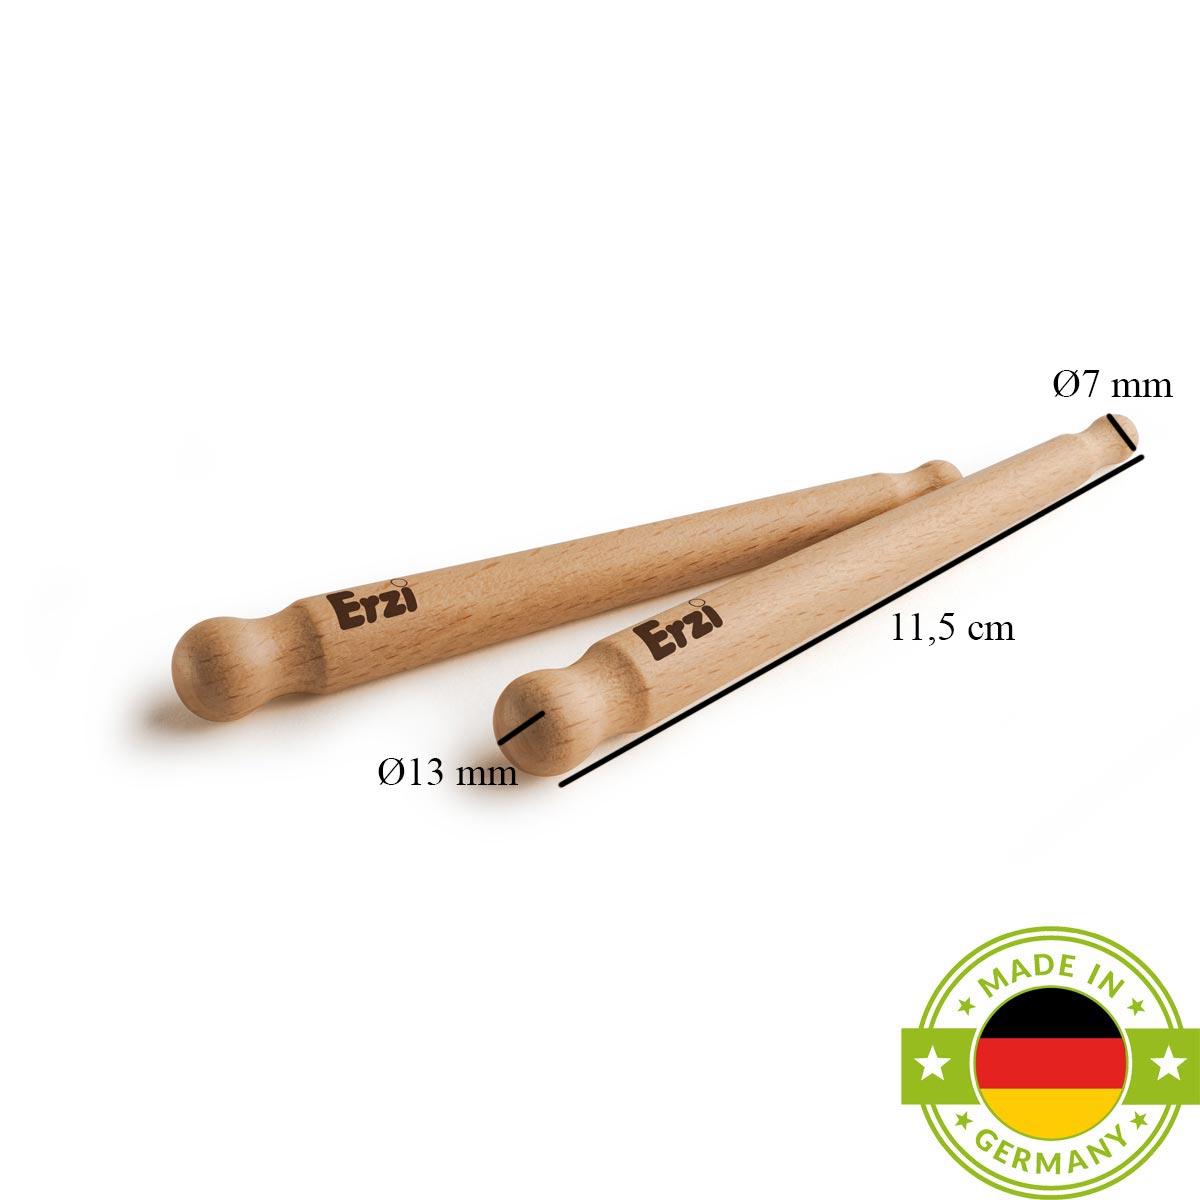 Woodroll Massagestäbchen im 2er Set aus Buchenholz - Hergestellt in Deutschland